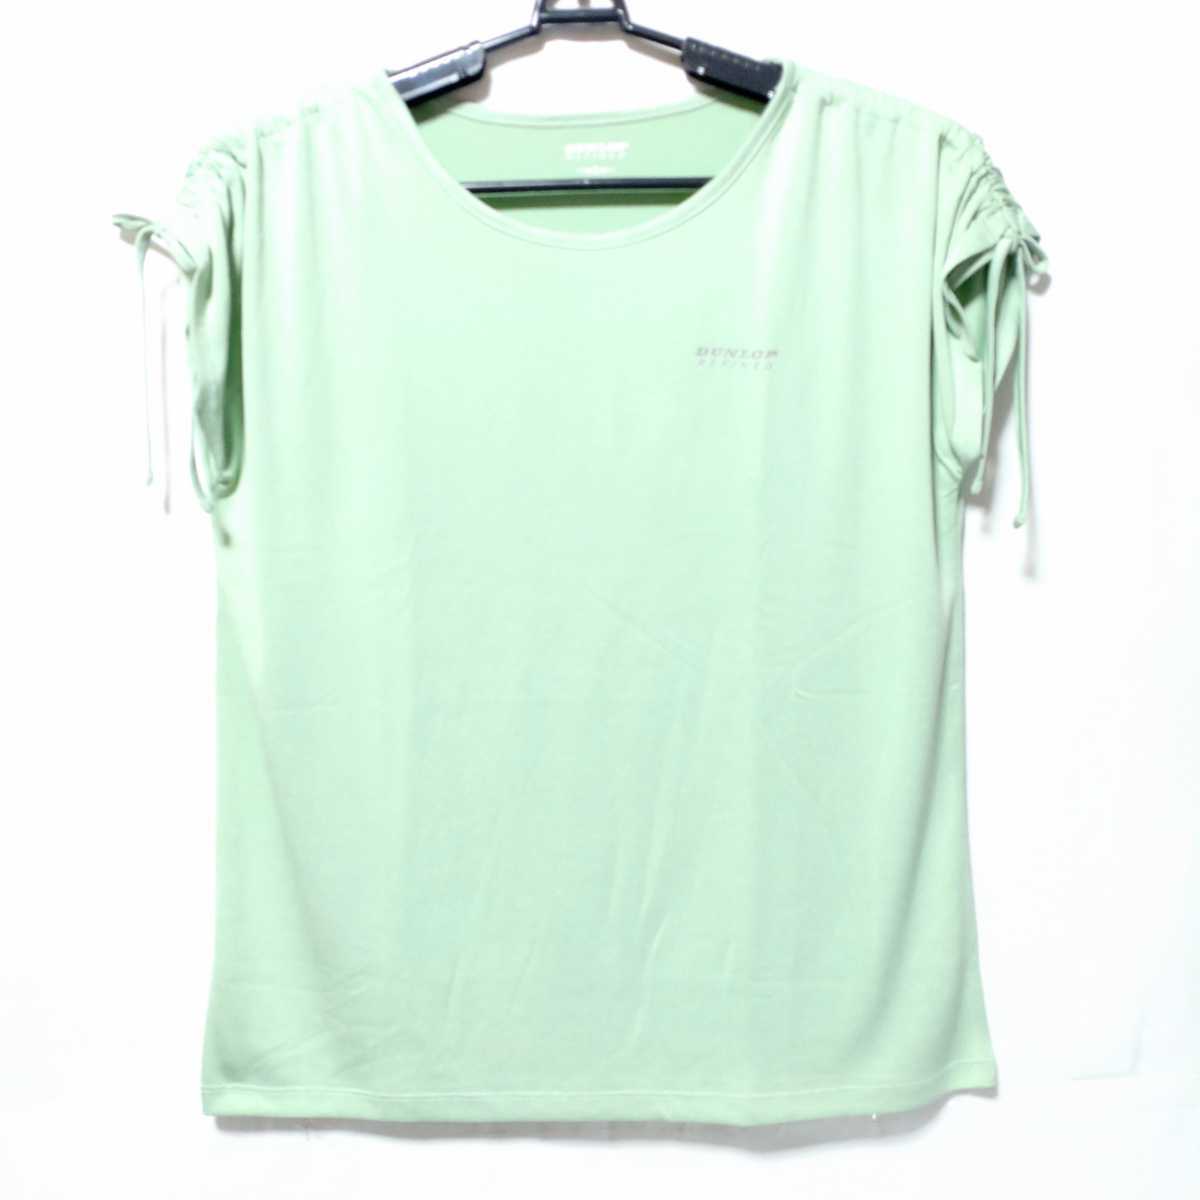 特価/未使用【サイズ=L】DUNLOP/レディス/半袖/Tシャツ/胸囲=86~94cm/Light.green_画像1